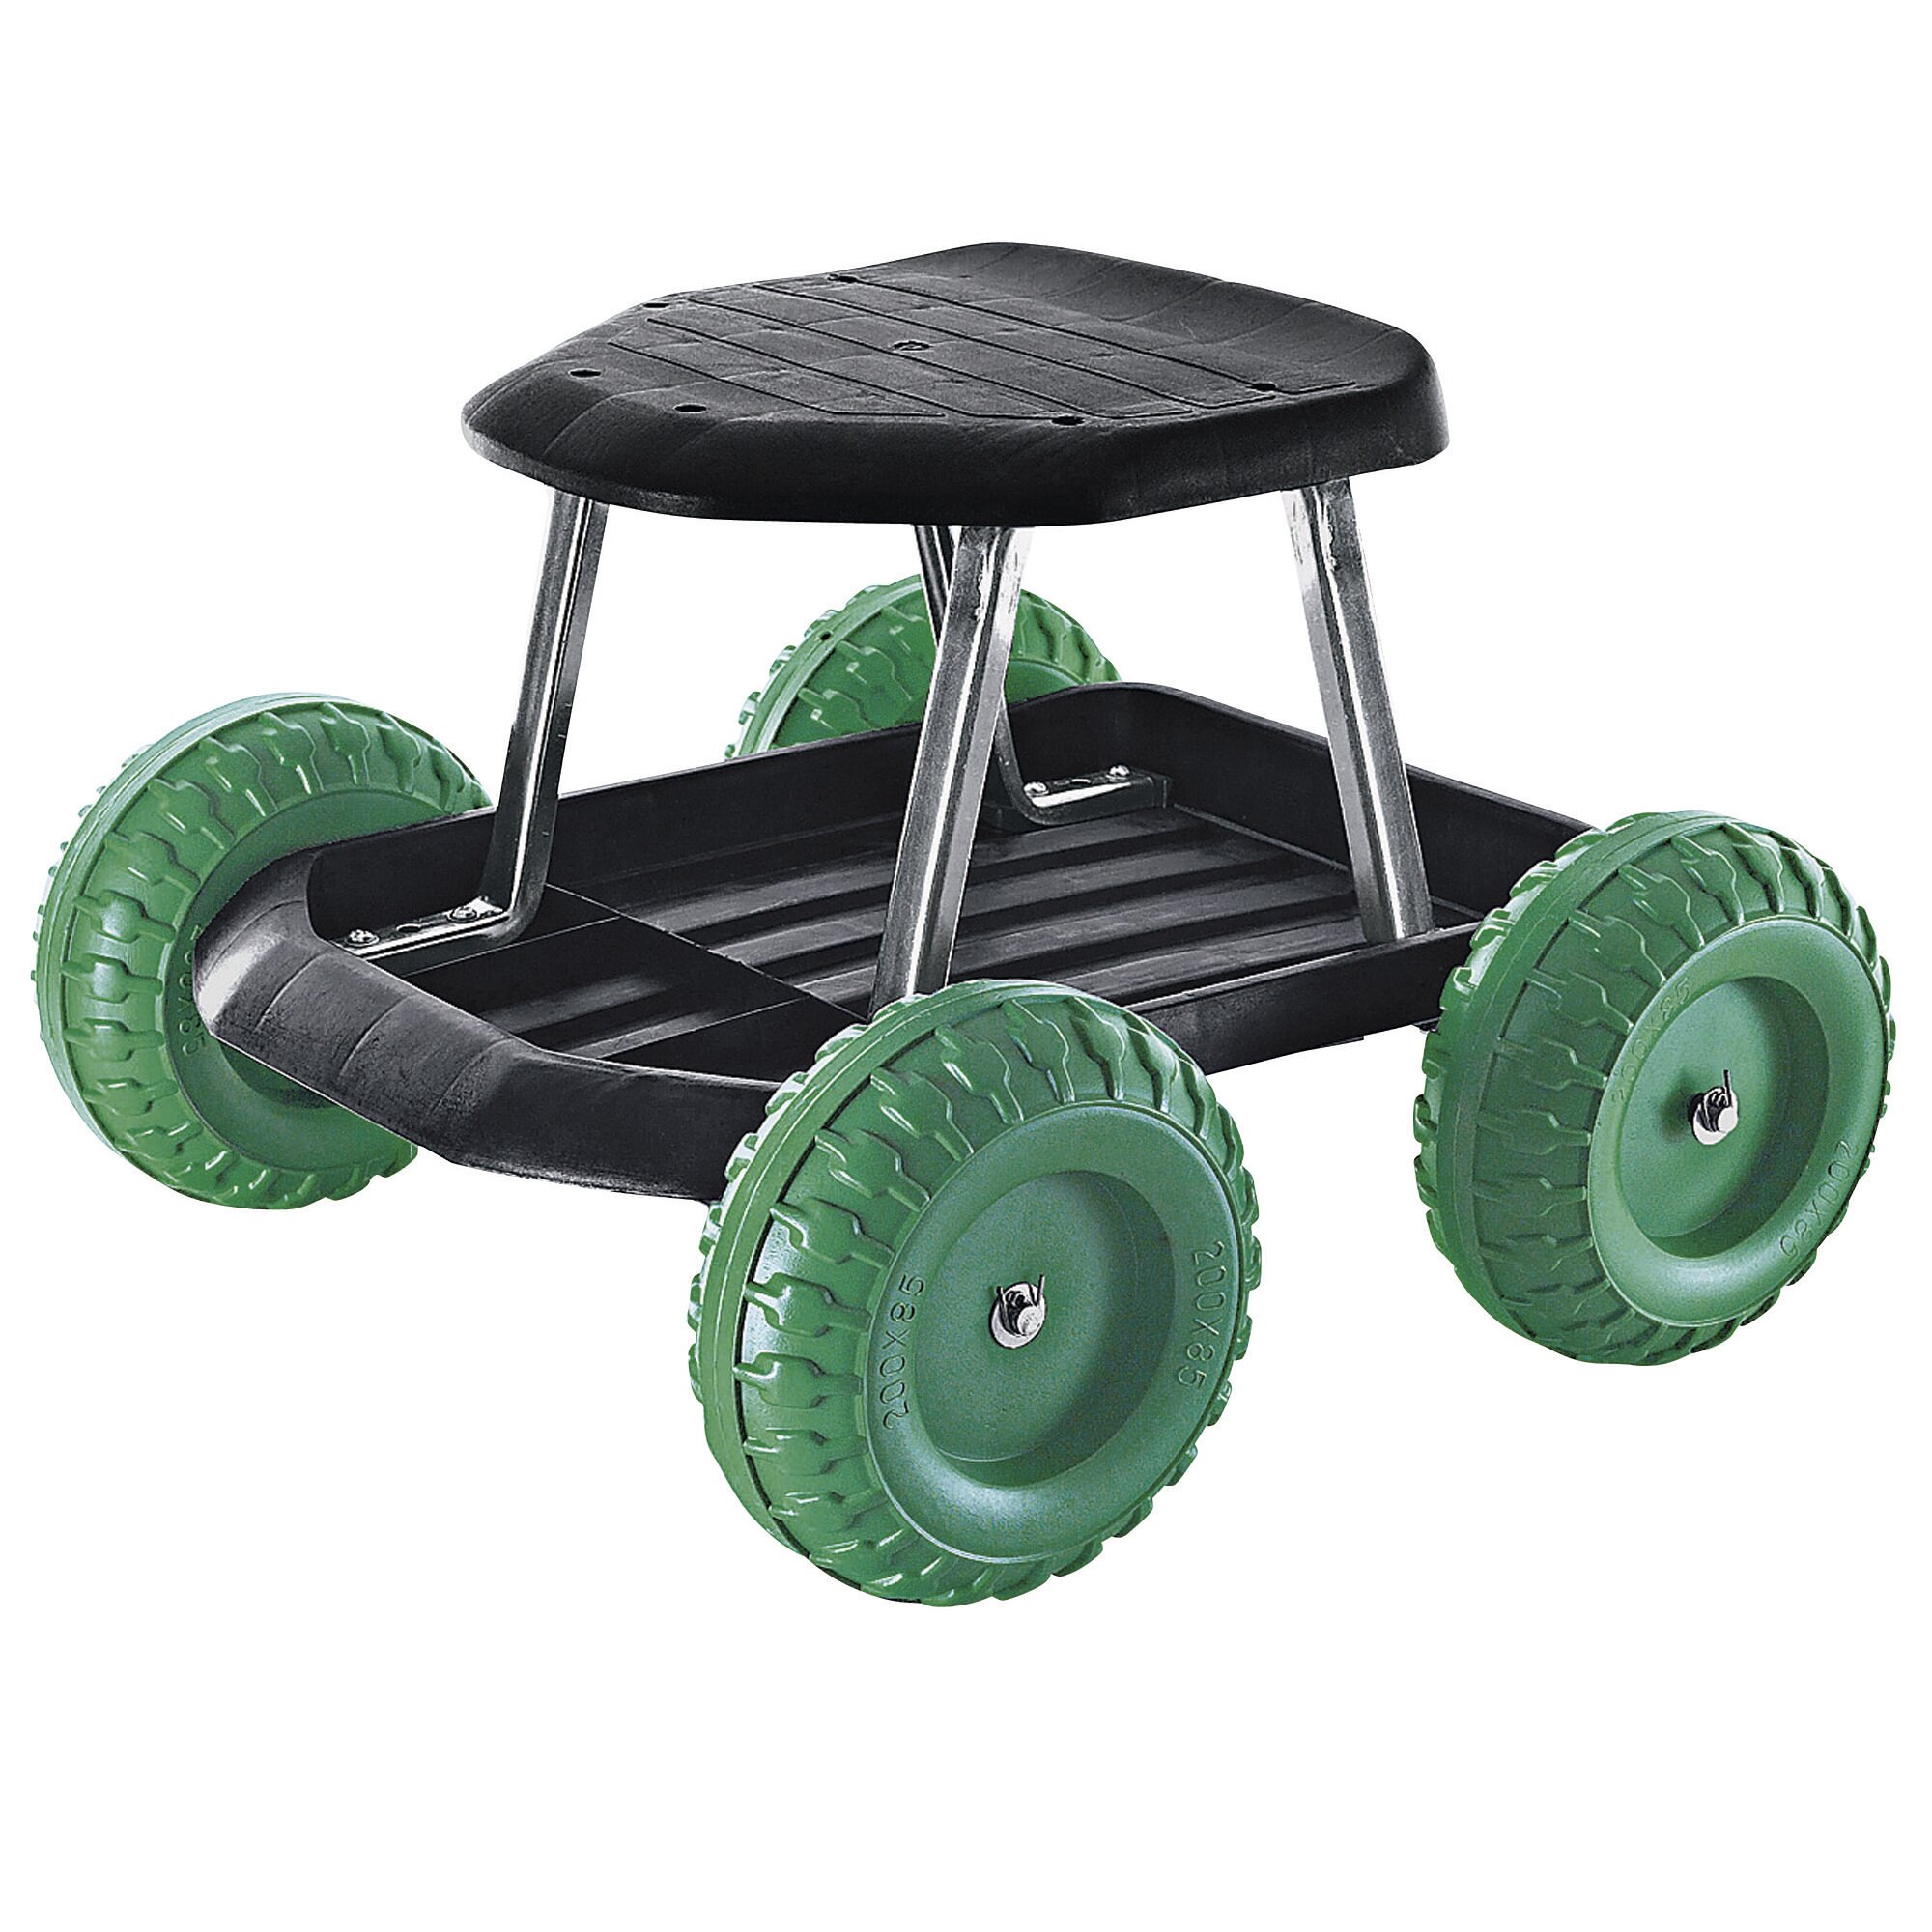 Siège à roulettes TRI, siège roulant pour le jardin, tabouret de jardin mobile, chariot de jardin, tabouret roulant de jardin